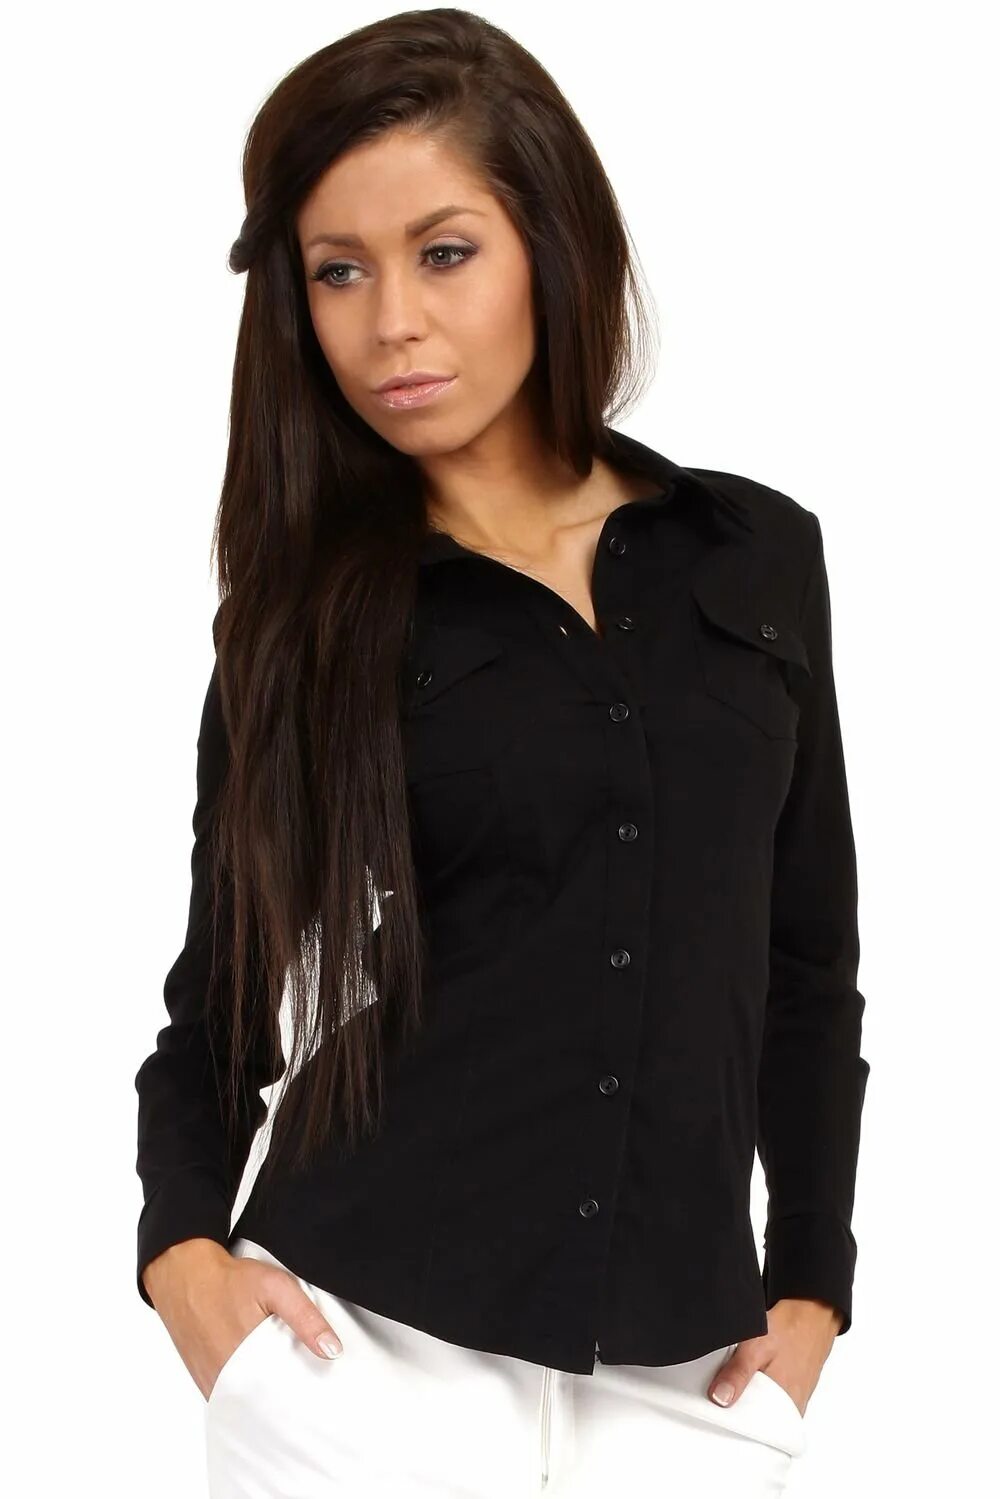 Рубашка черная девочки. Рубашка Avalon женская черная. Черная блузка. Чёрная блузка женская. Черная блузка рубашка женская.